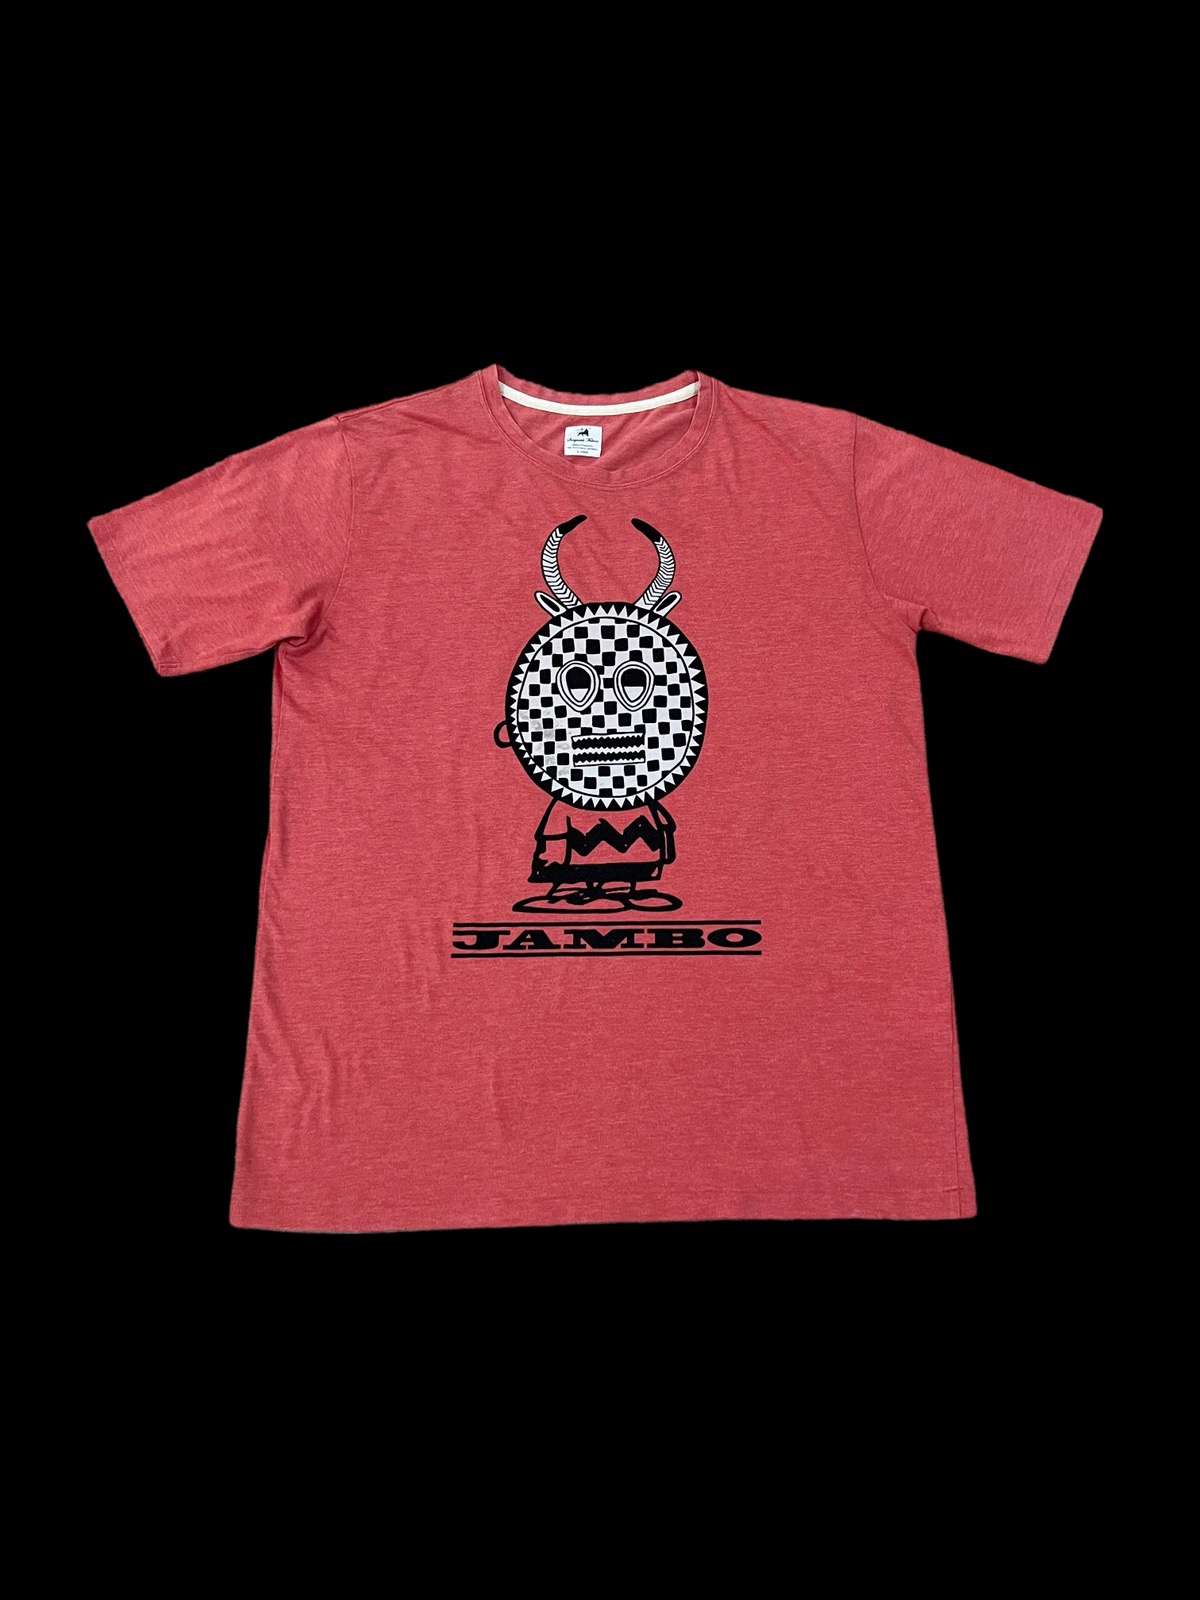 Jambo Print T-Shirt - 1